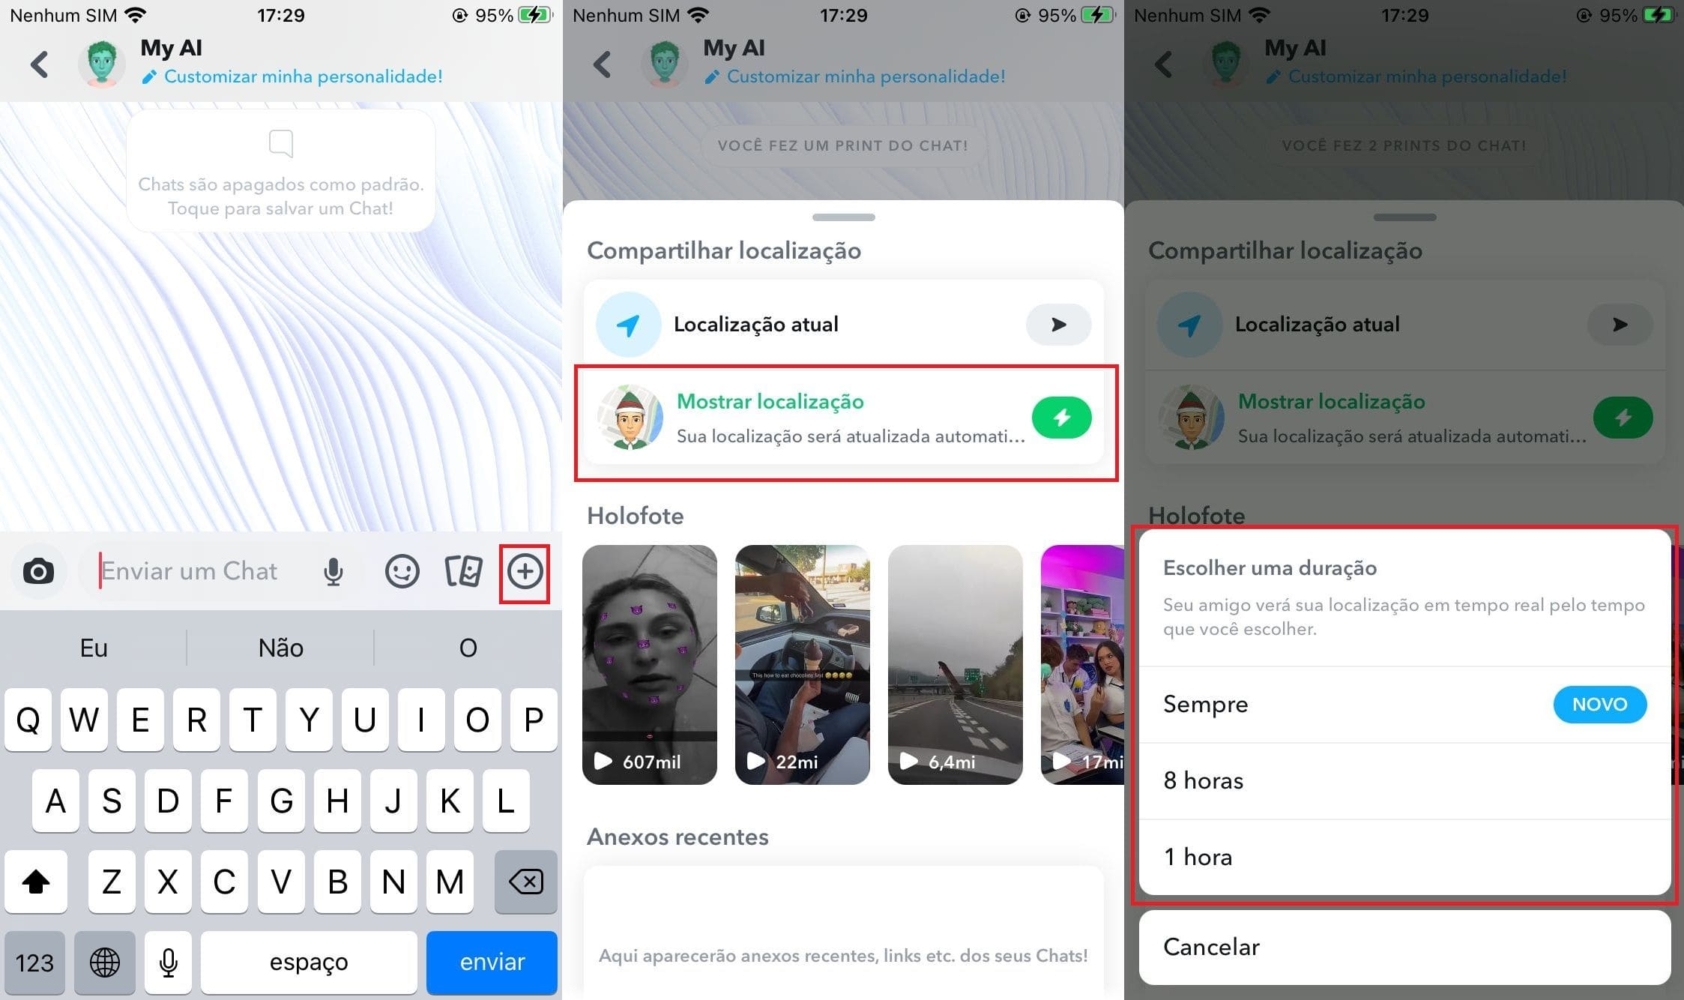 Imagem com o passo a passo para compartilhar localização do Snapchat no iPhone